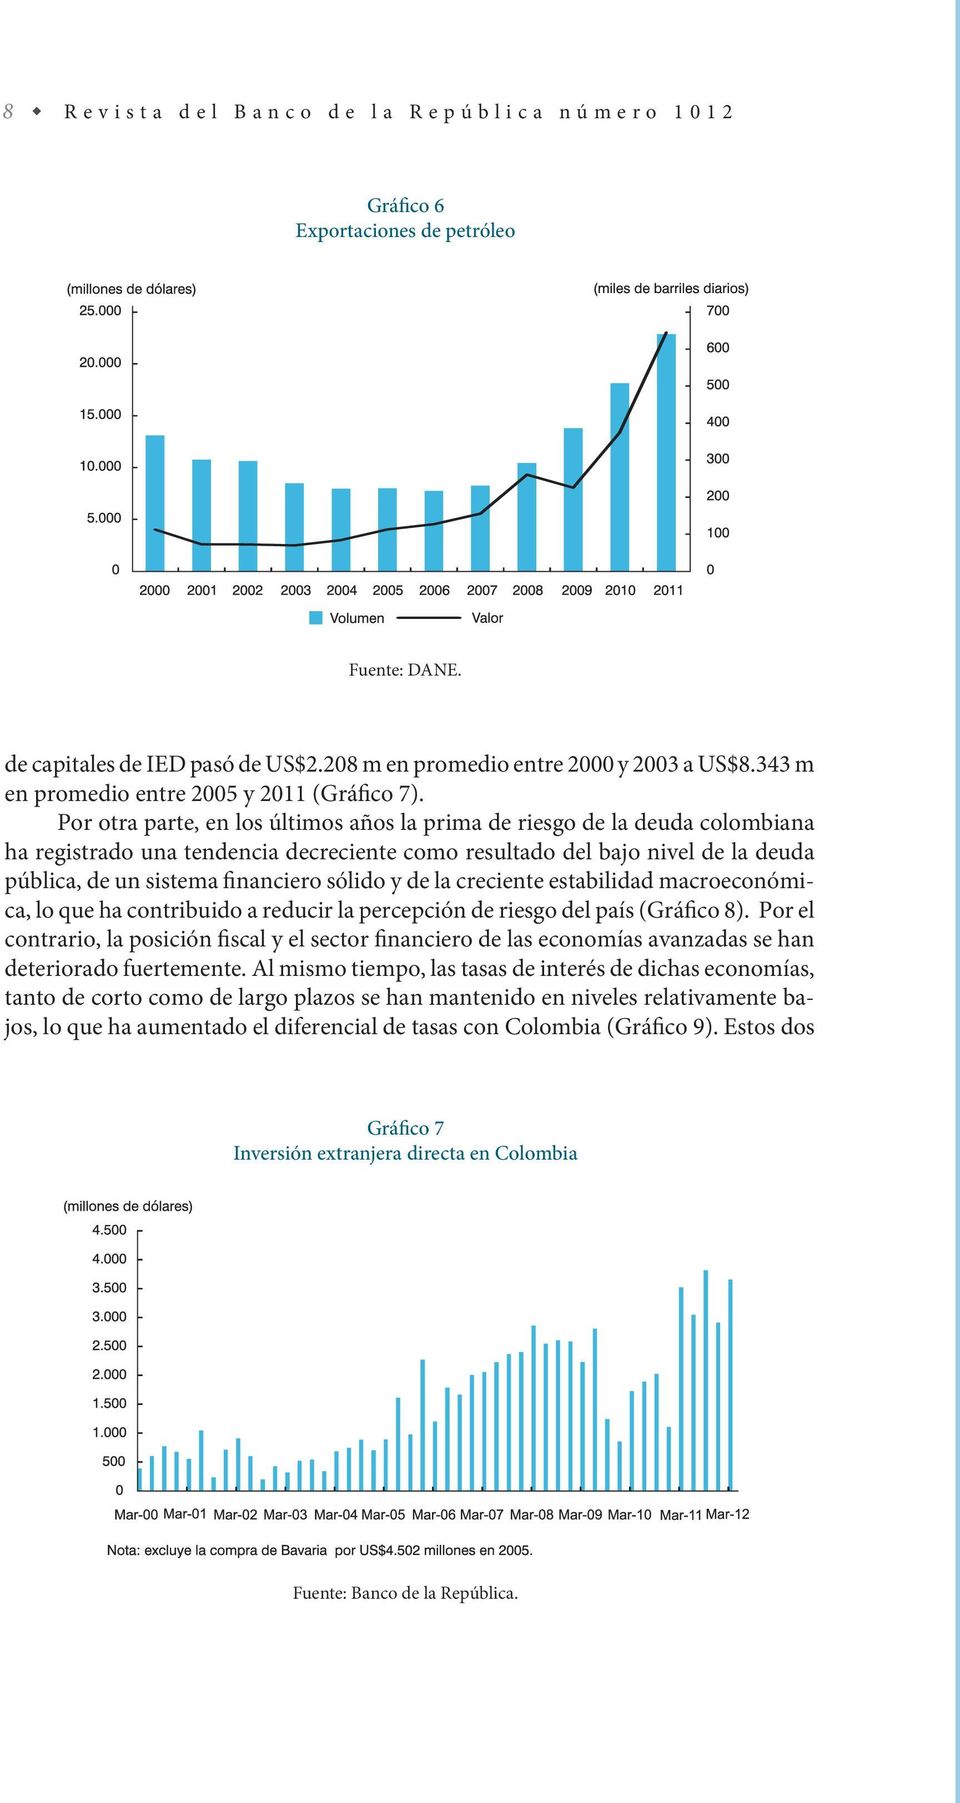 Por otra parte, en los últimos años la prima de riesgo de la deuda colombiana ha registrado una tendencia decreciente como resultado del bajo nivel de la deuda pública, de un sistema financiero